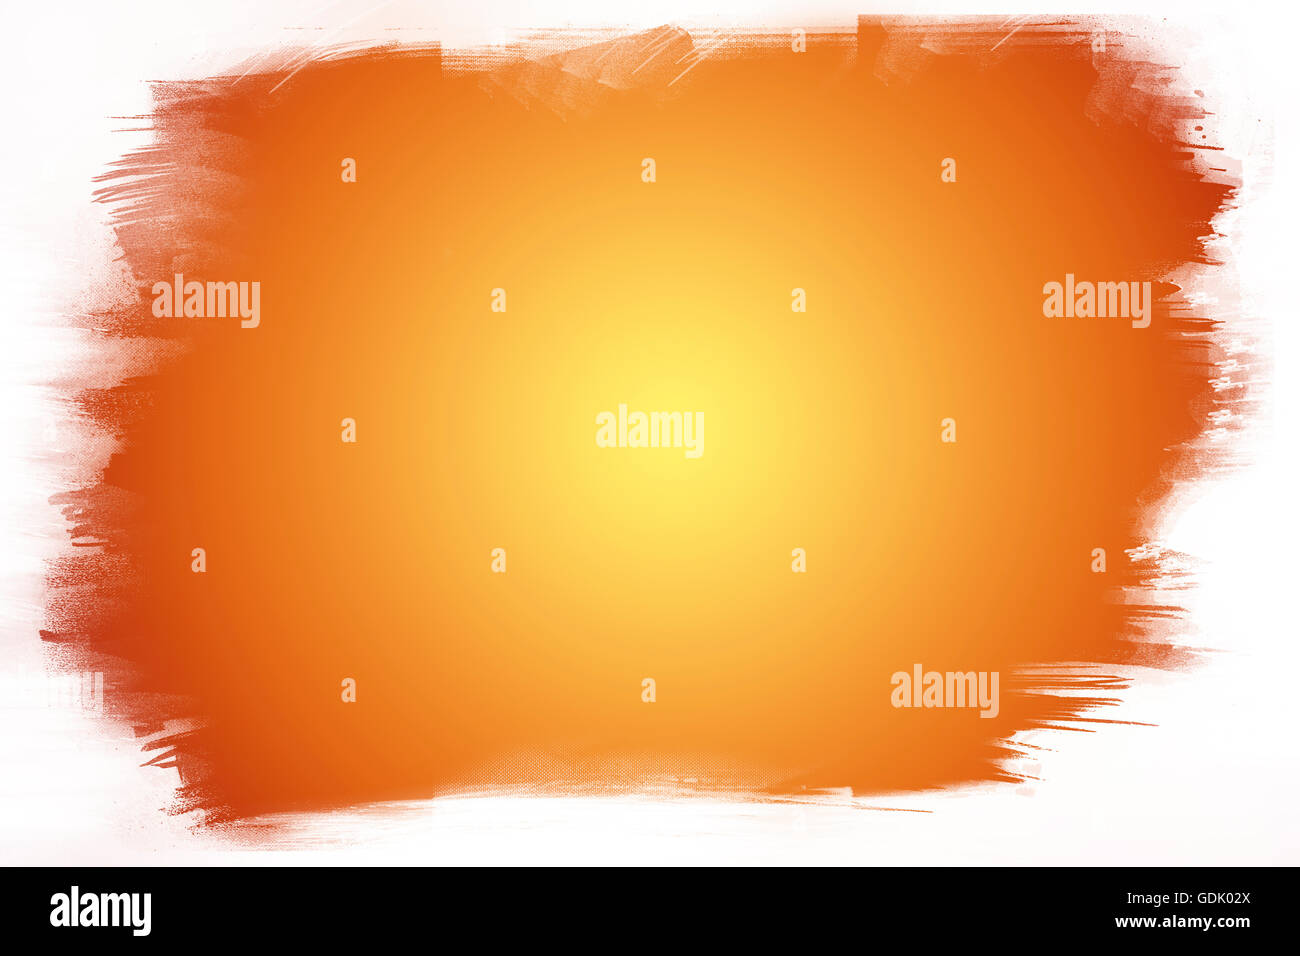 Orange paint on white background Stock Photo